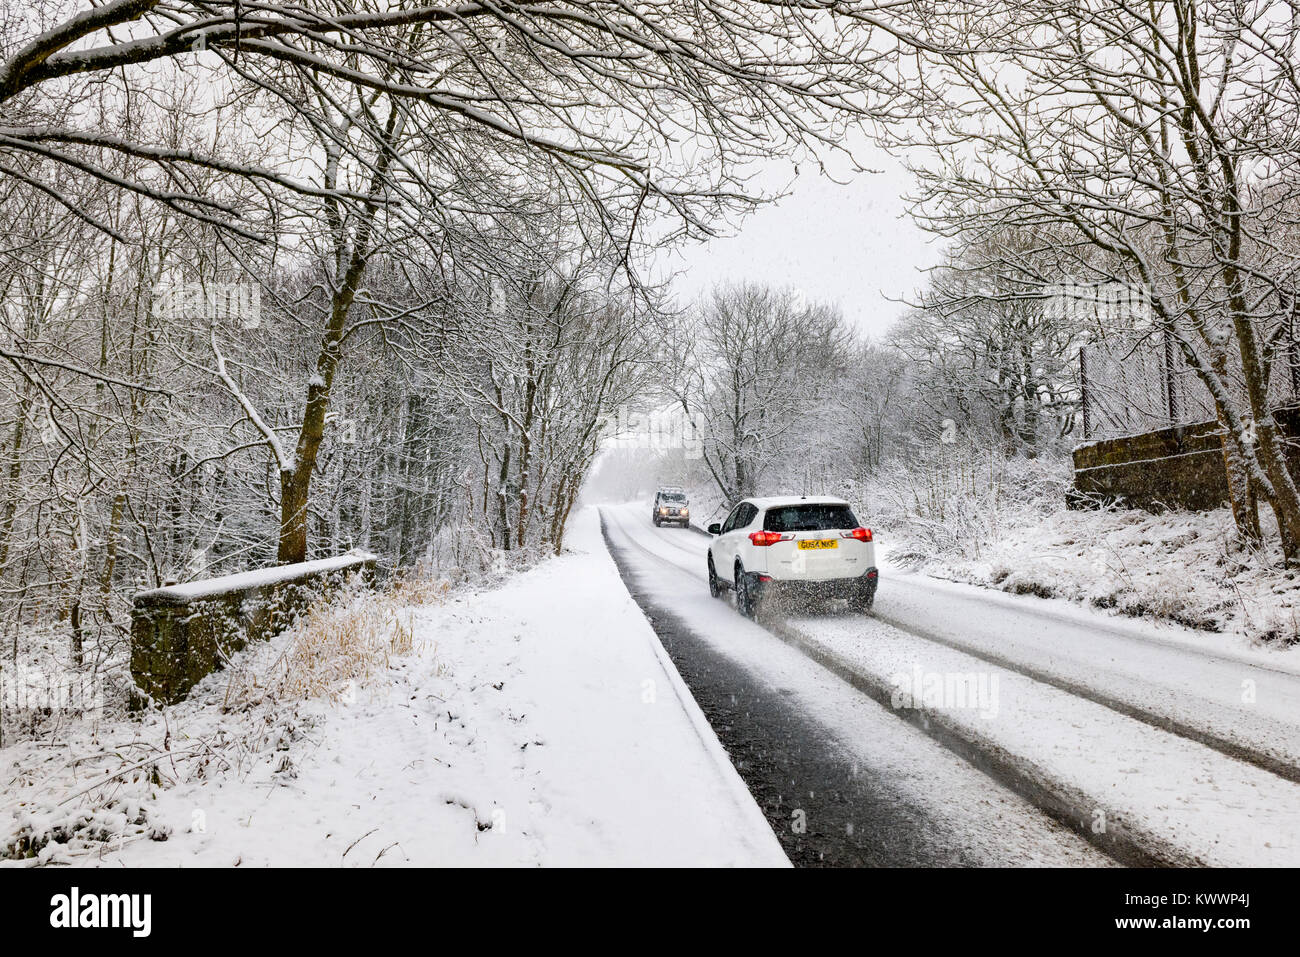 La route couverte de neige dans la campagne anglaise en hiver. Voitures de naviguer snowy rural road County Durham en hiver, les conditions de conduite automobile dans le Nord de l'Angleterre Banque D'Images